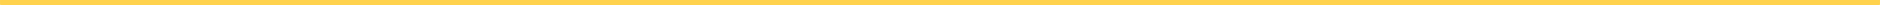 Linea de división color amarillo